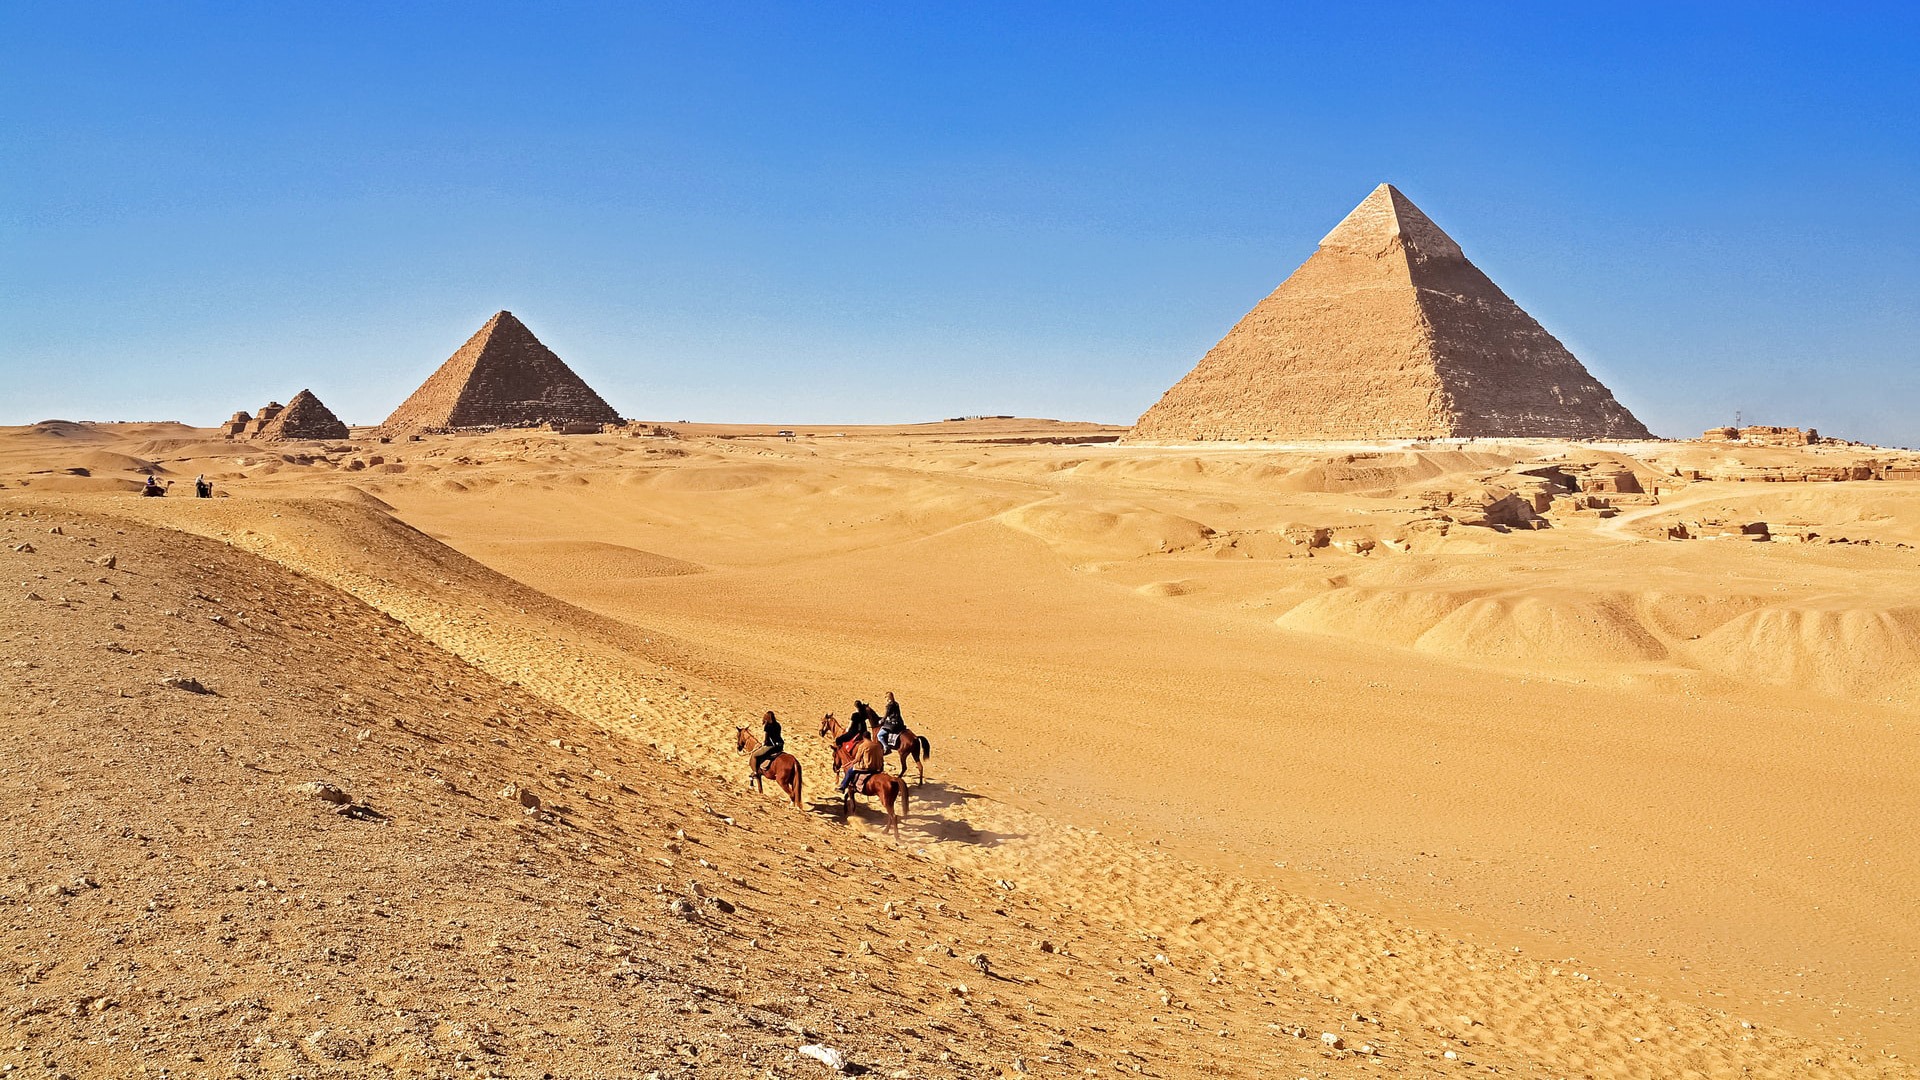 Riding horses near the Great Pyramids of Giza, Cairo, Egypt